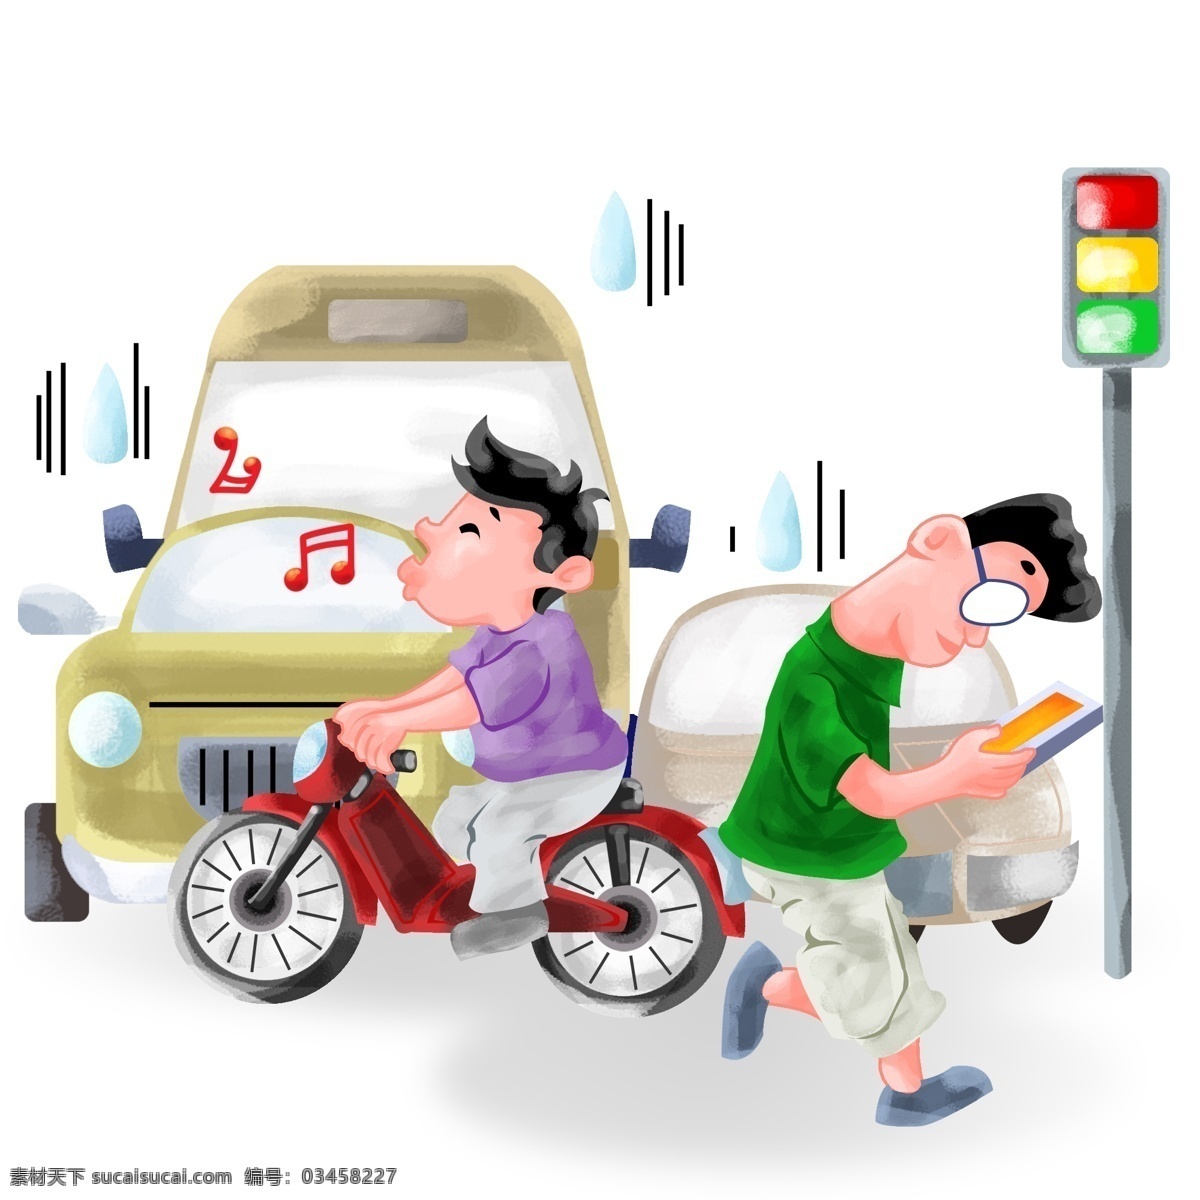 手绘 马路 不 看 红绿灯 插画 过马路 骑 自行车 孩子 看书的路人 违反交通法 手绘插画 卡通插画 遵守 交通 规则